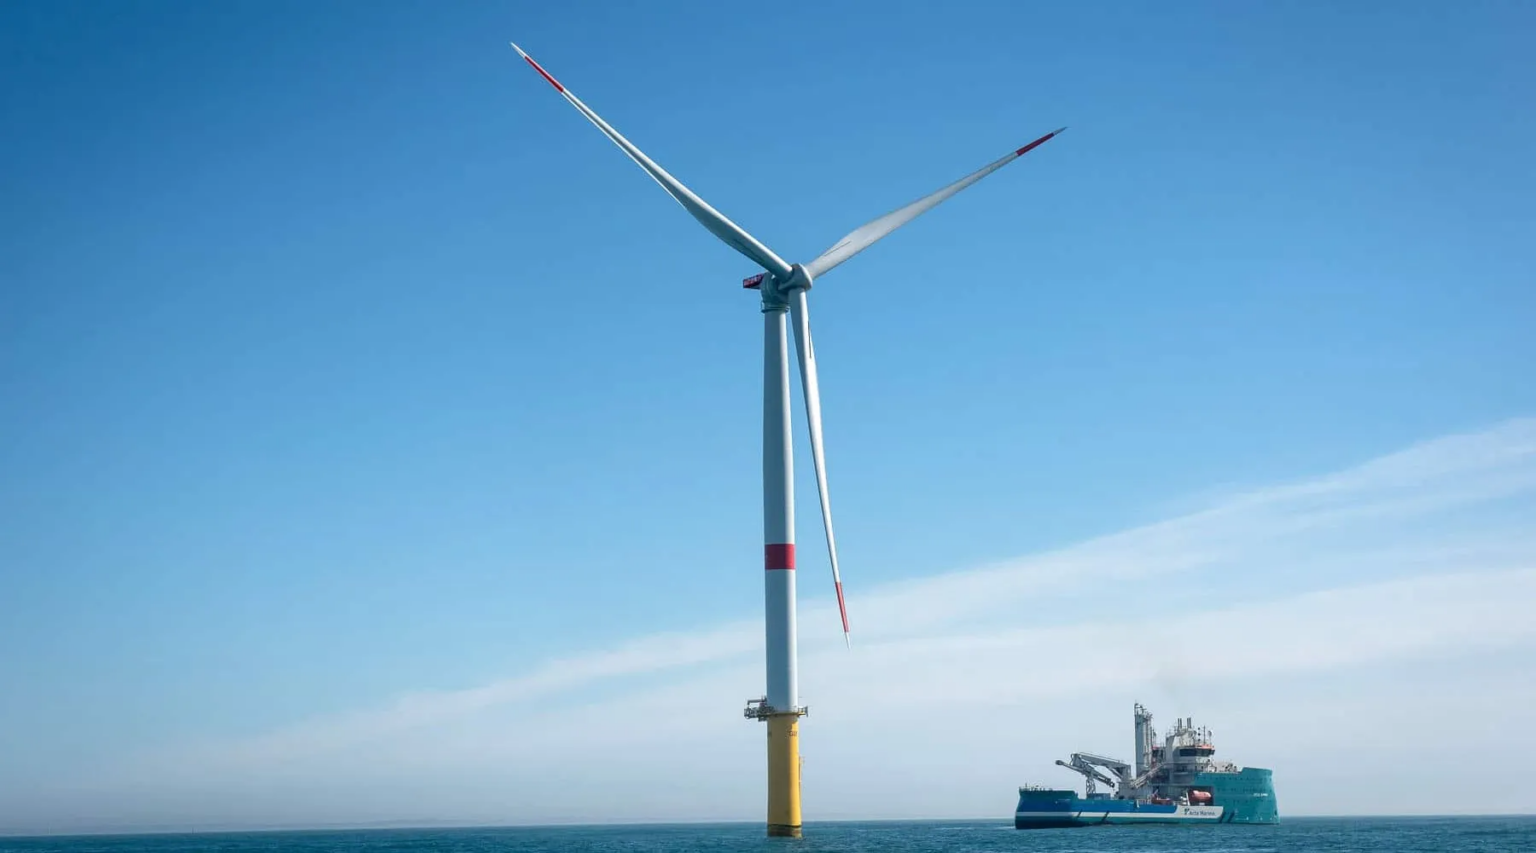 У Франції запустили першу офшорну вітроелектростанцію потужністю 480 МВт, яка може забезпечити електроенергією 700 000 користувачів на рік